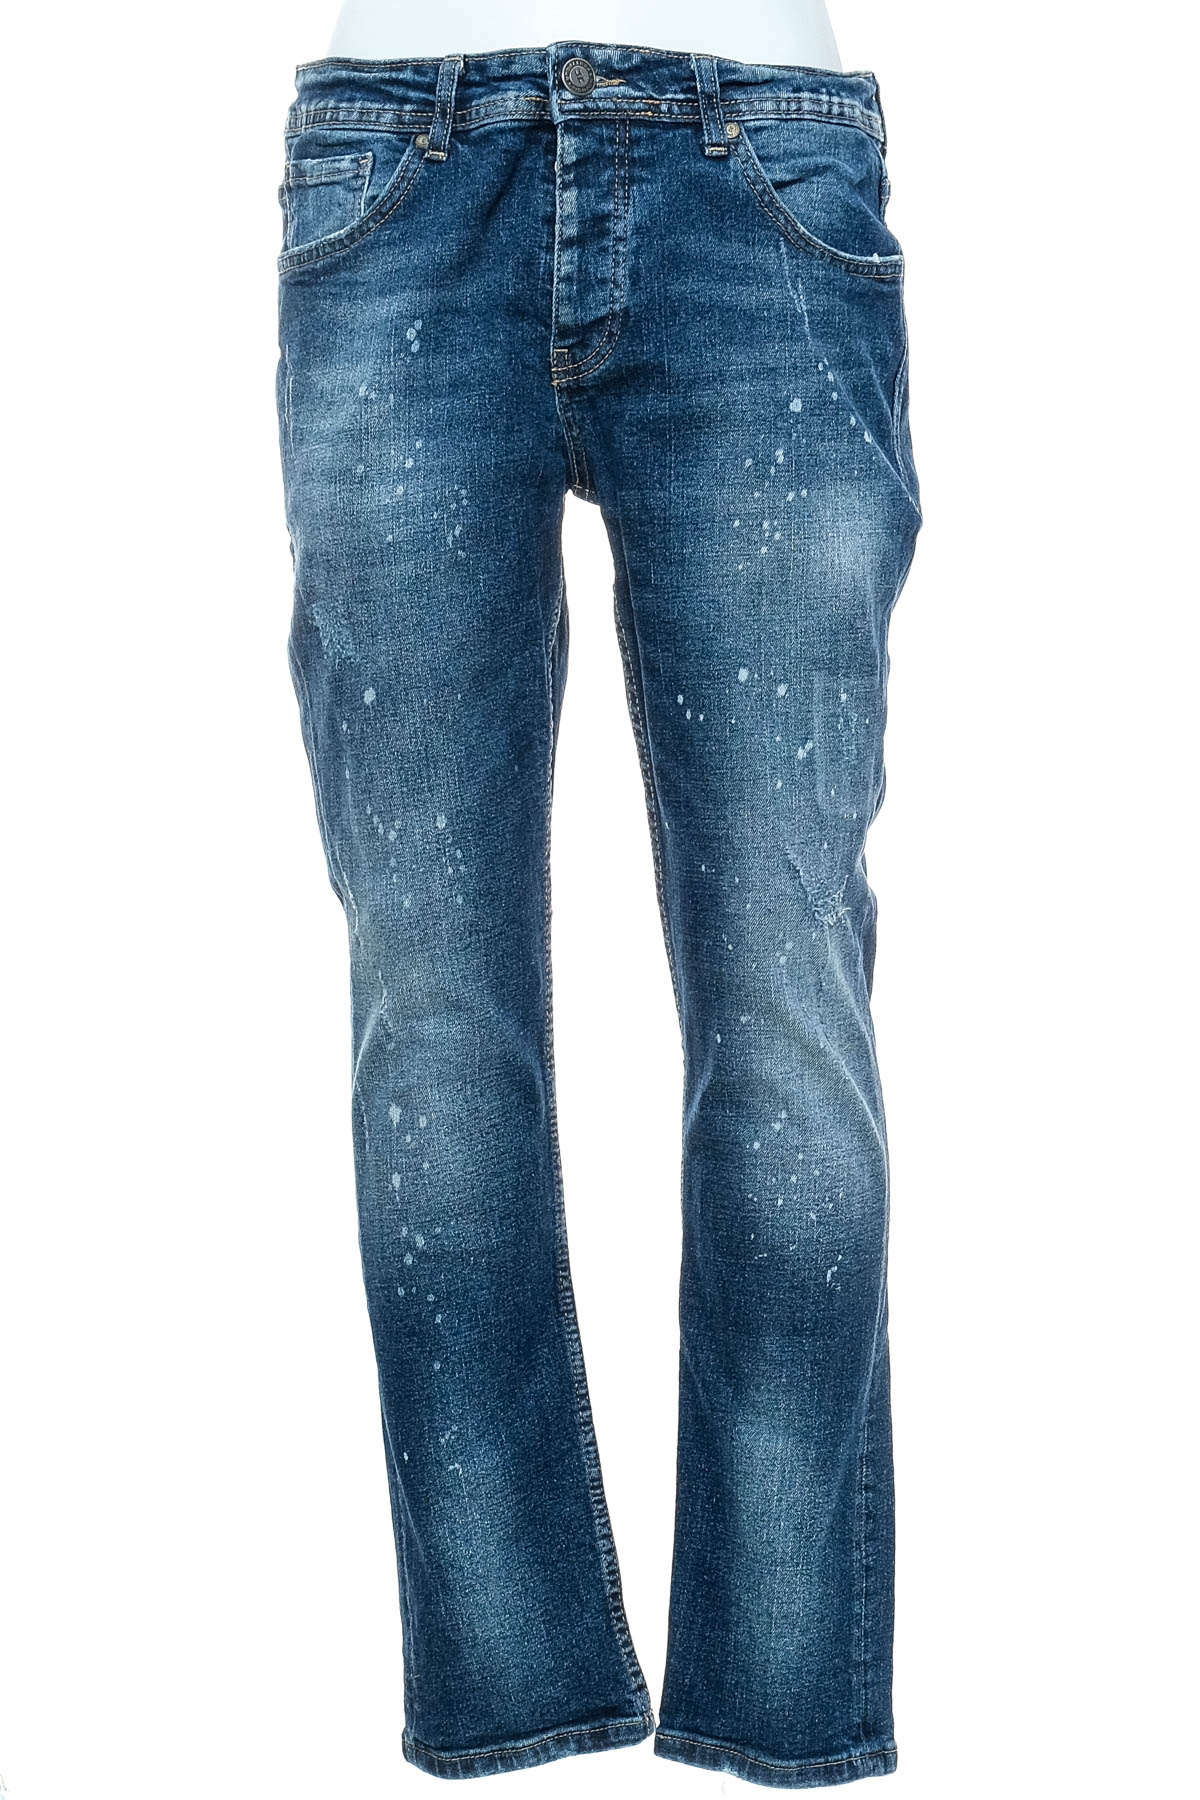 Men's jeans - Merish - 0